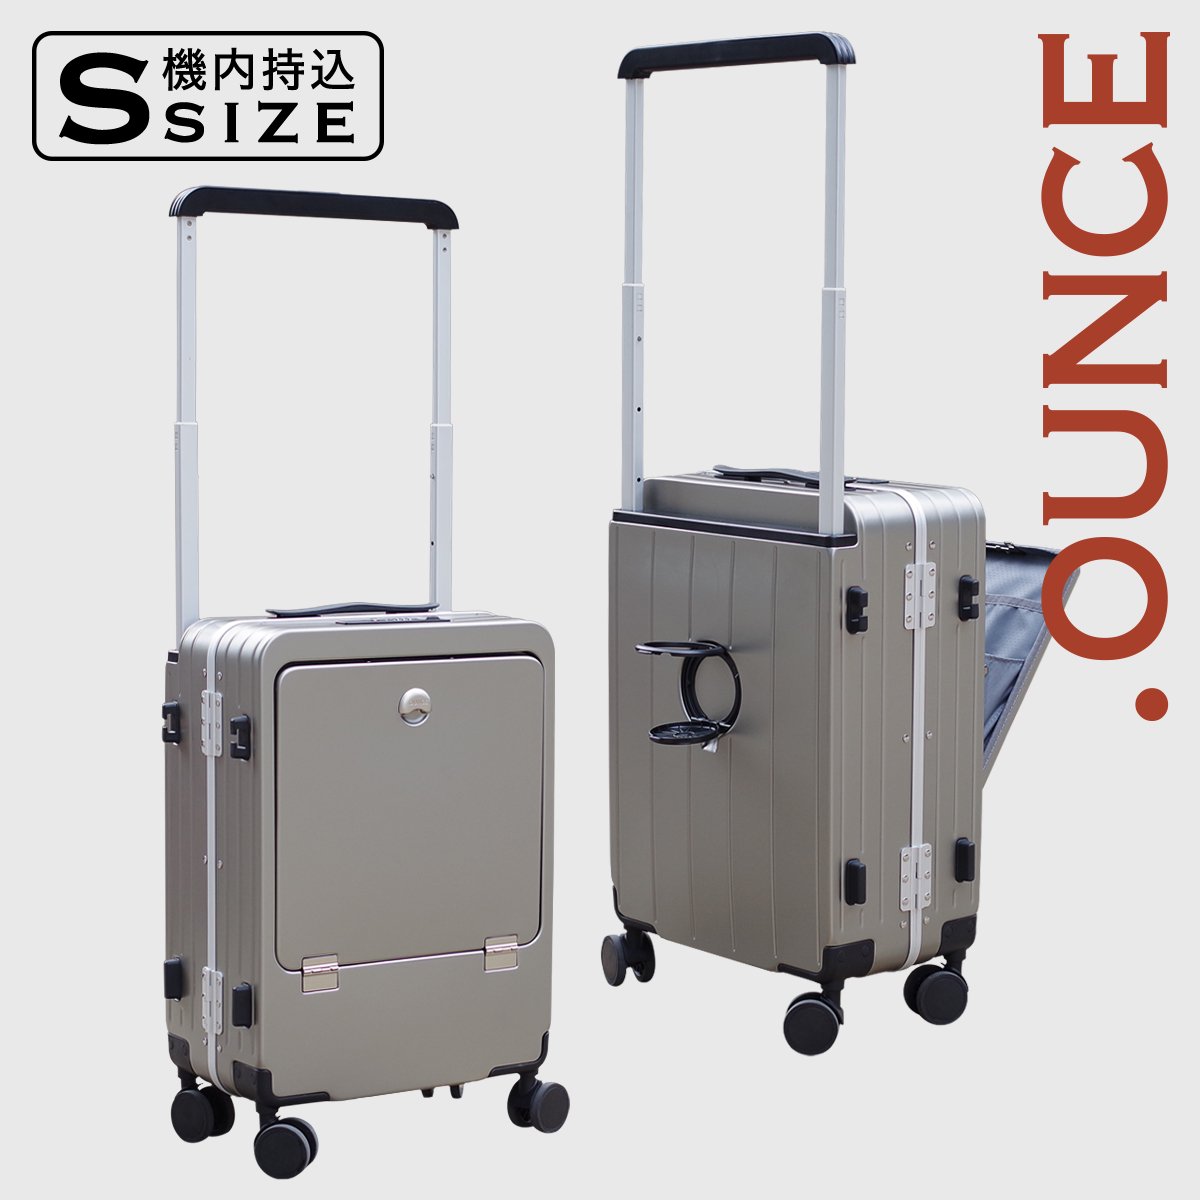 OUNCE 多機能 スーツケース アルミフレーム 機内持ち込み STYLISH